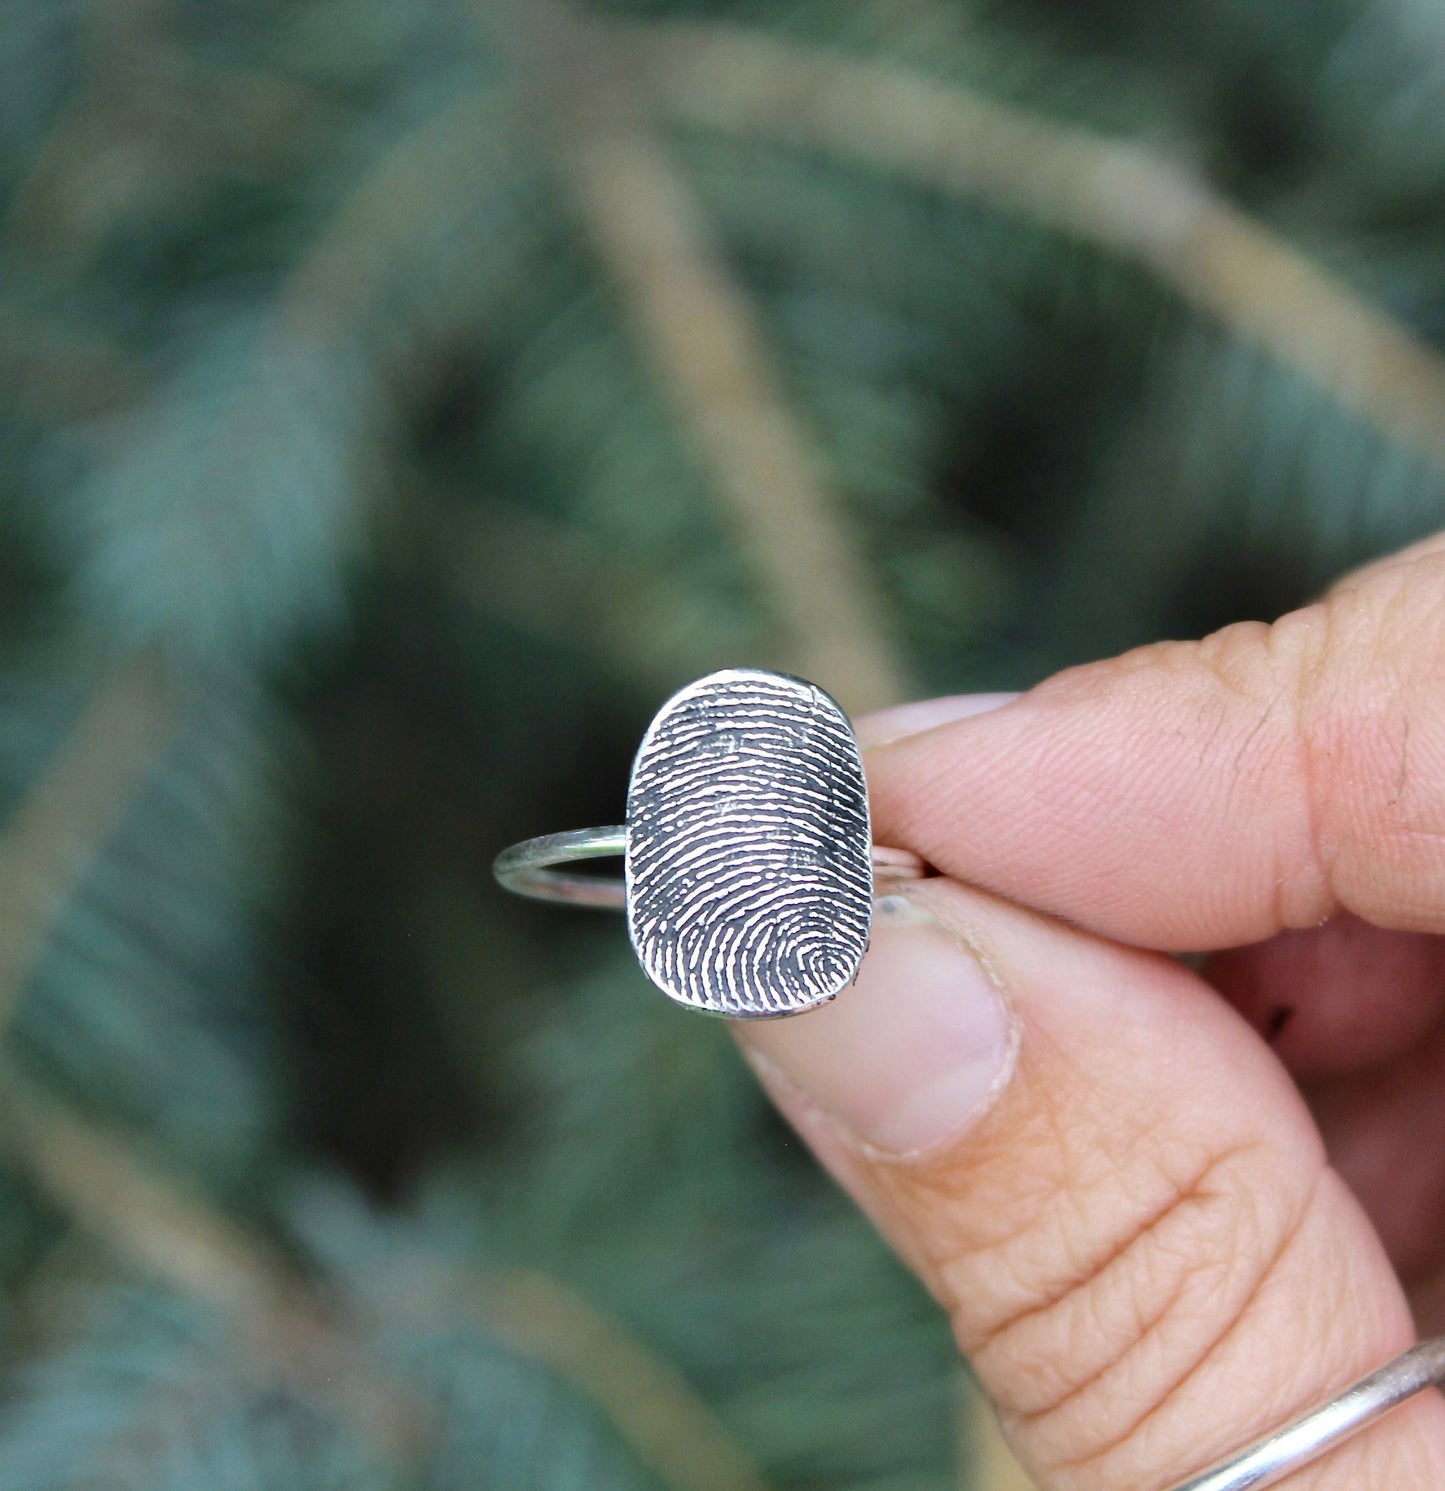 Oval Fingerprint Ring